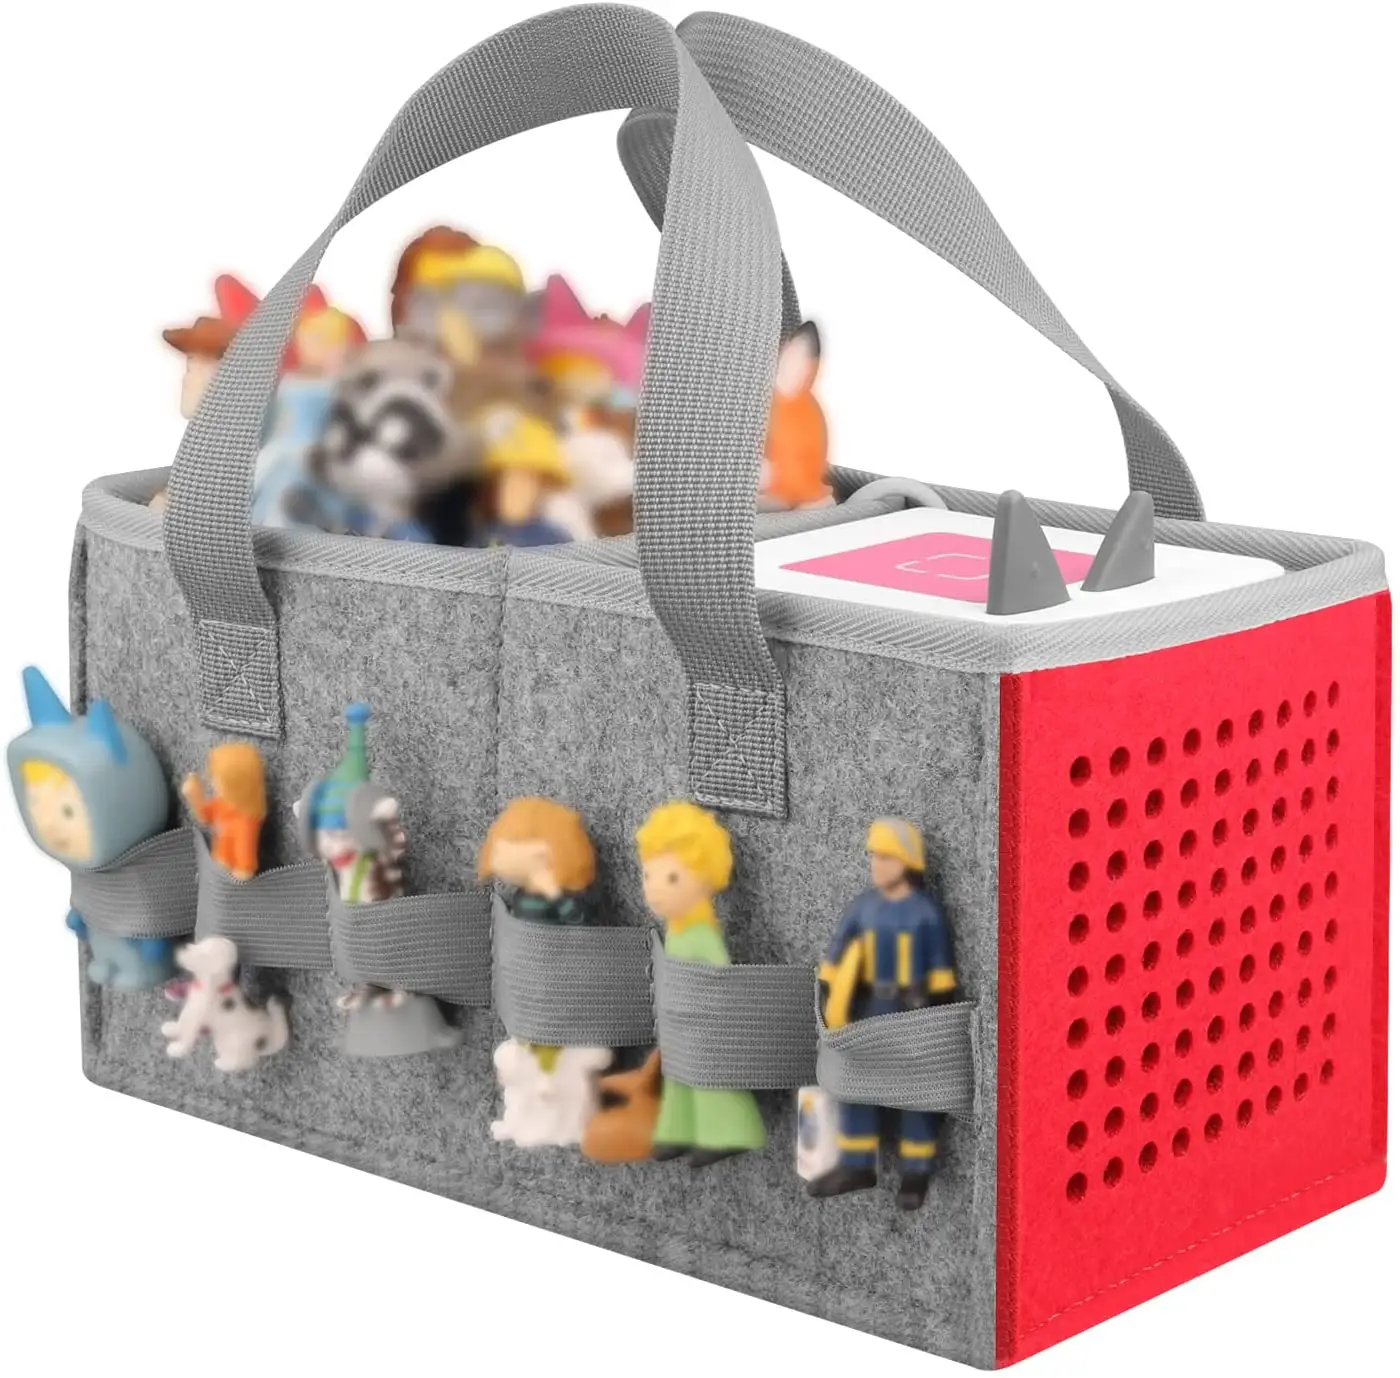 Регулируемый съемный плечевой ремень amazon, креативная Войлочная игрушка, сумка для переноски Toniebox, стартовый набор для аудиоплеера Toniebox